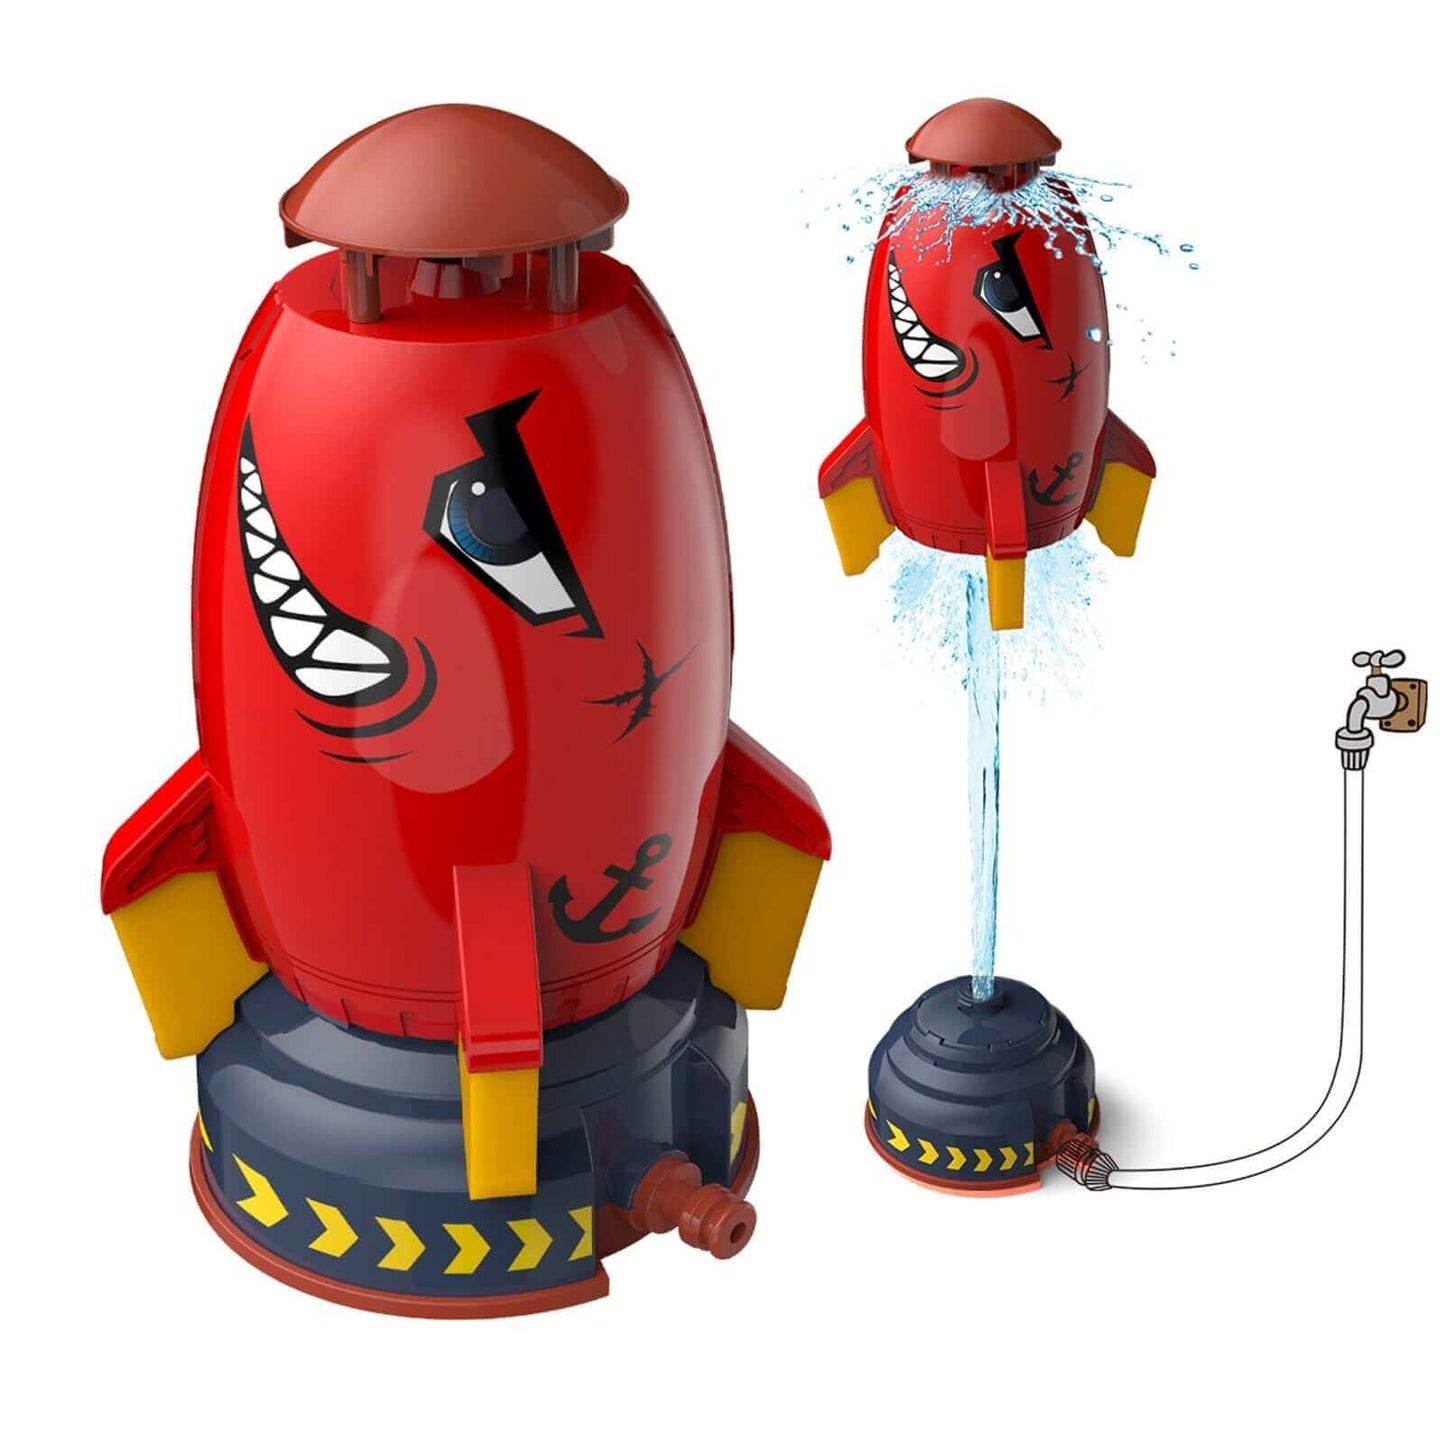 Açık roket başlatıcısı oyuncak-bahçe eğlence ve interaktif oyun için su powered sprinkler-çocuk çim su spreyi roket